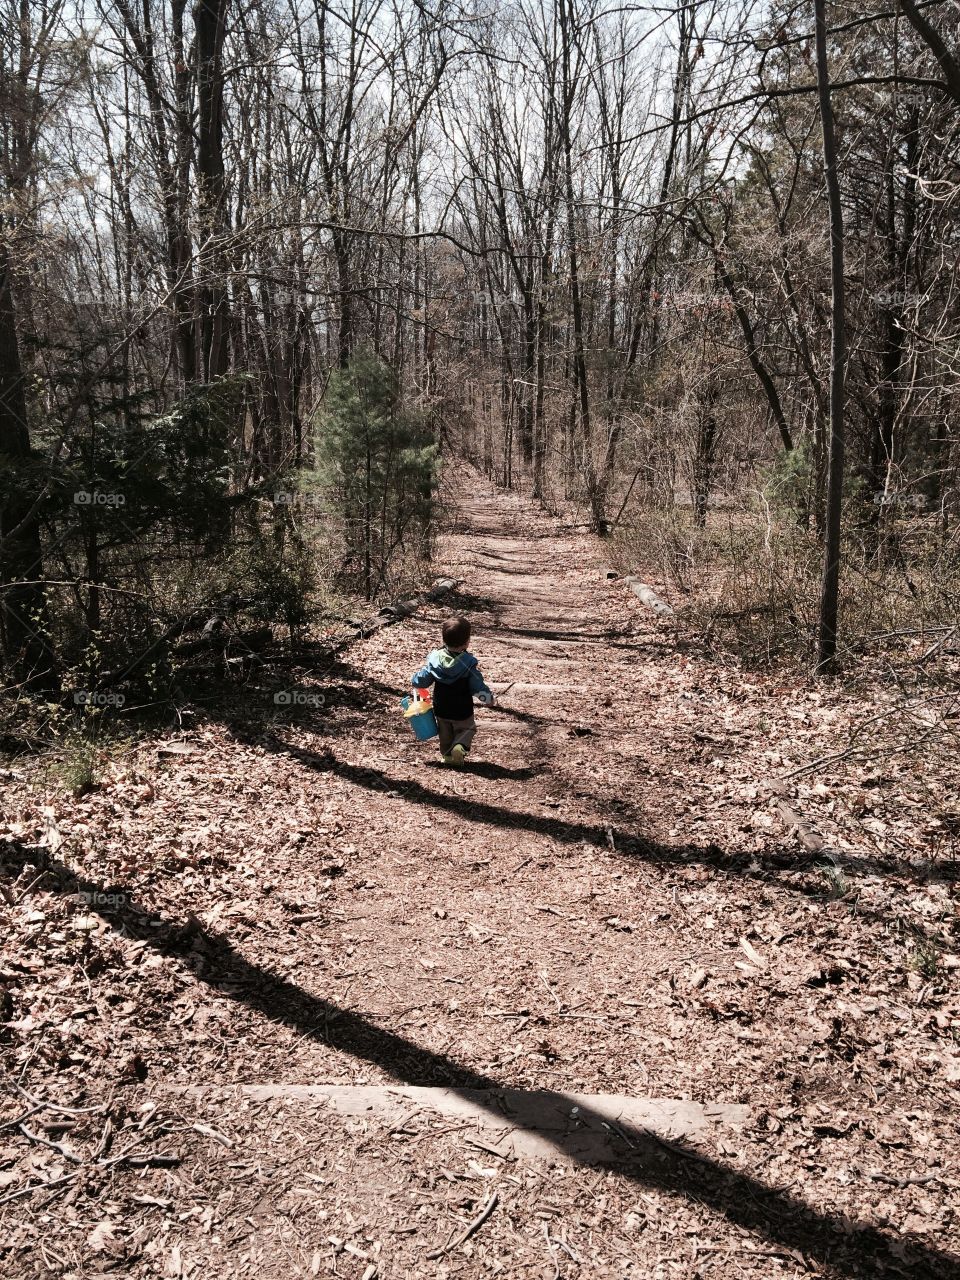 Small boy big trail. A boy sets off down the trail